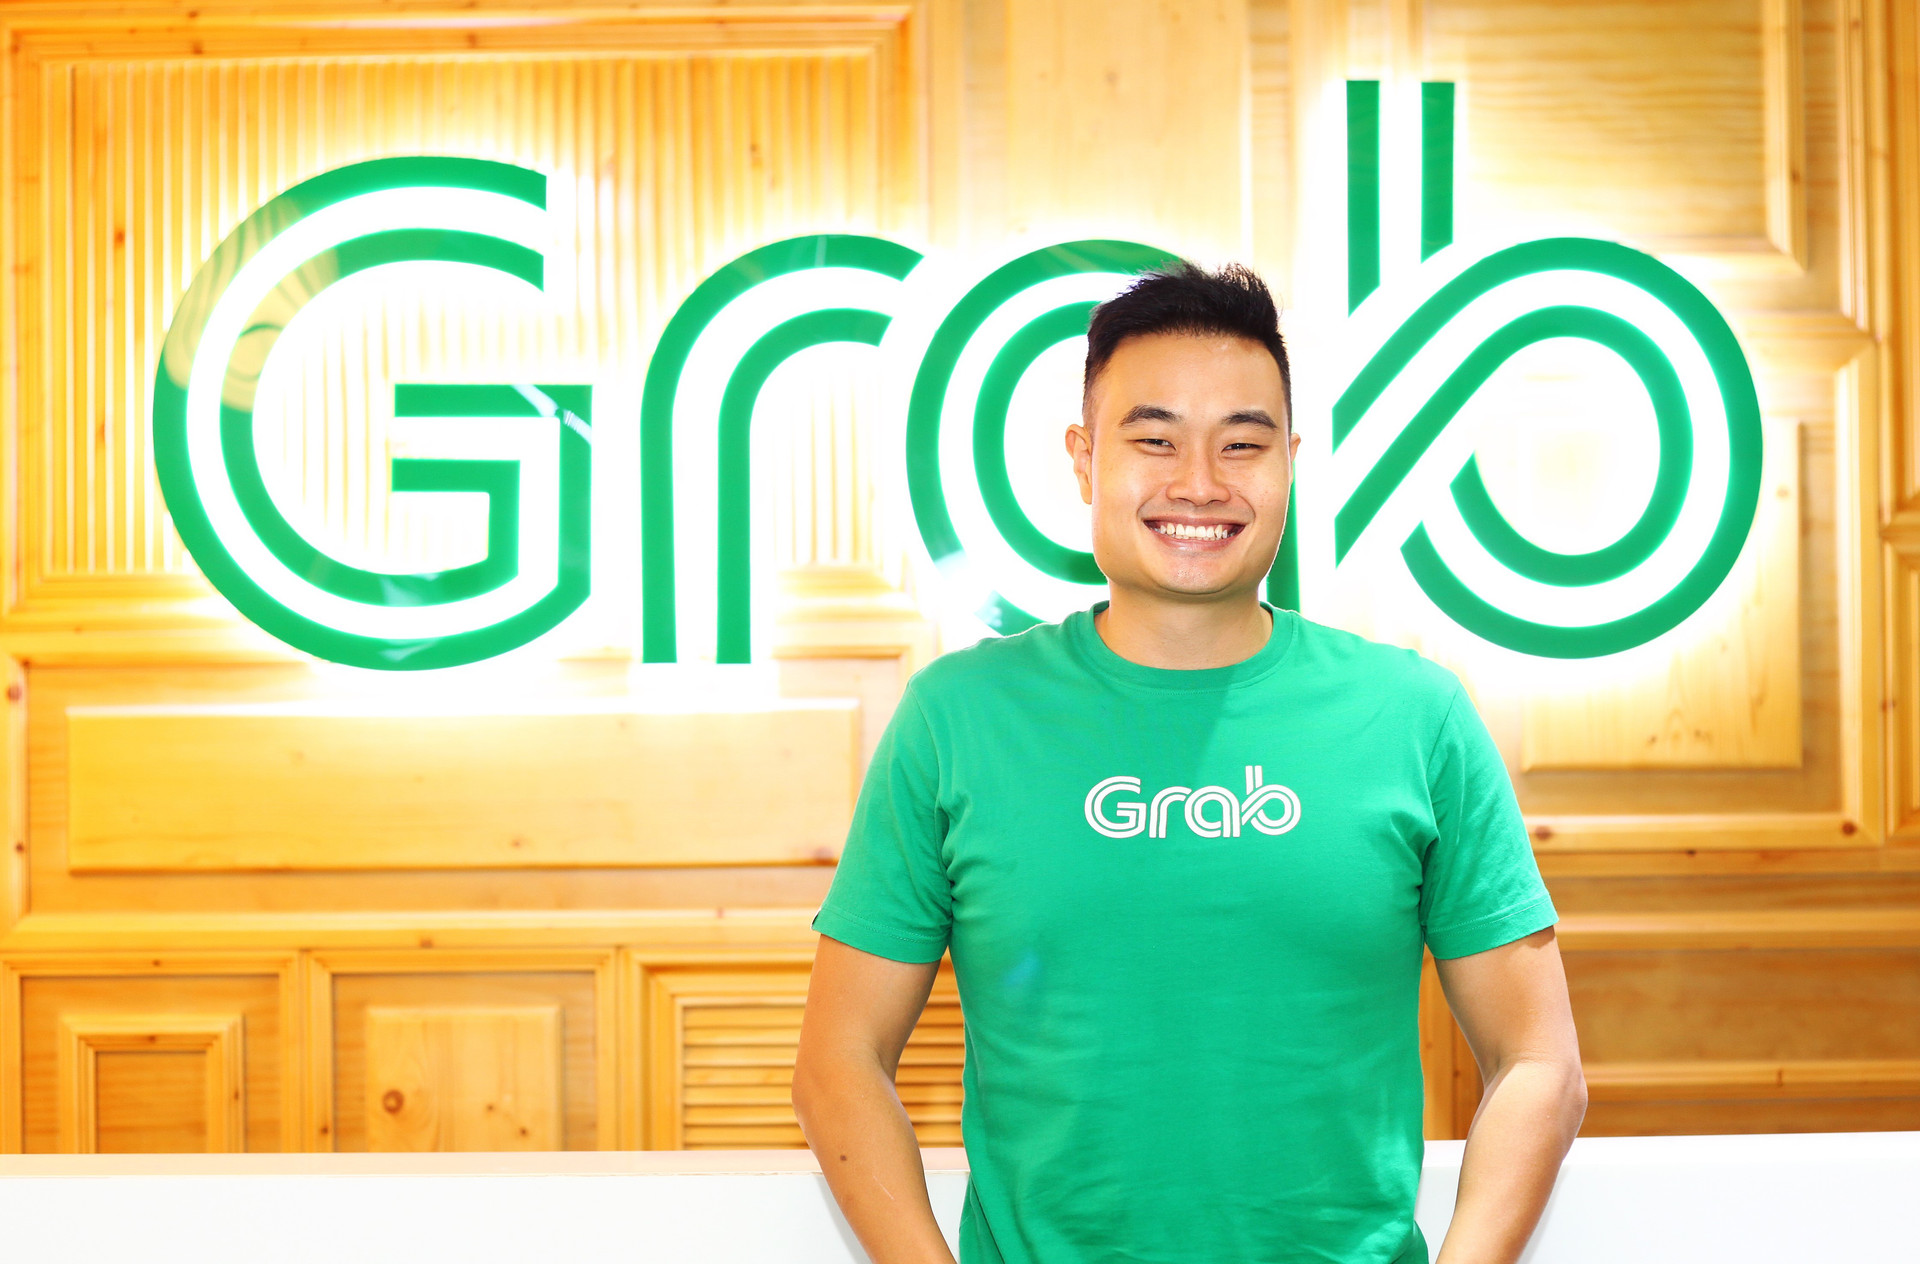 Giám đốc Grab Việt Nam: Grab sẽ tiếp tục đầu tư mạnh mẽ vào thị trường Việt Nam